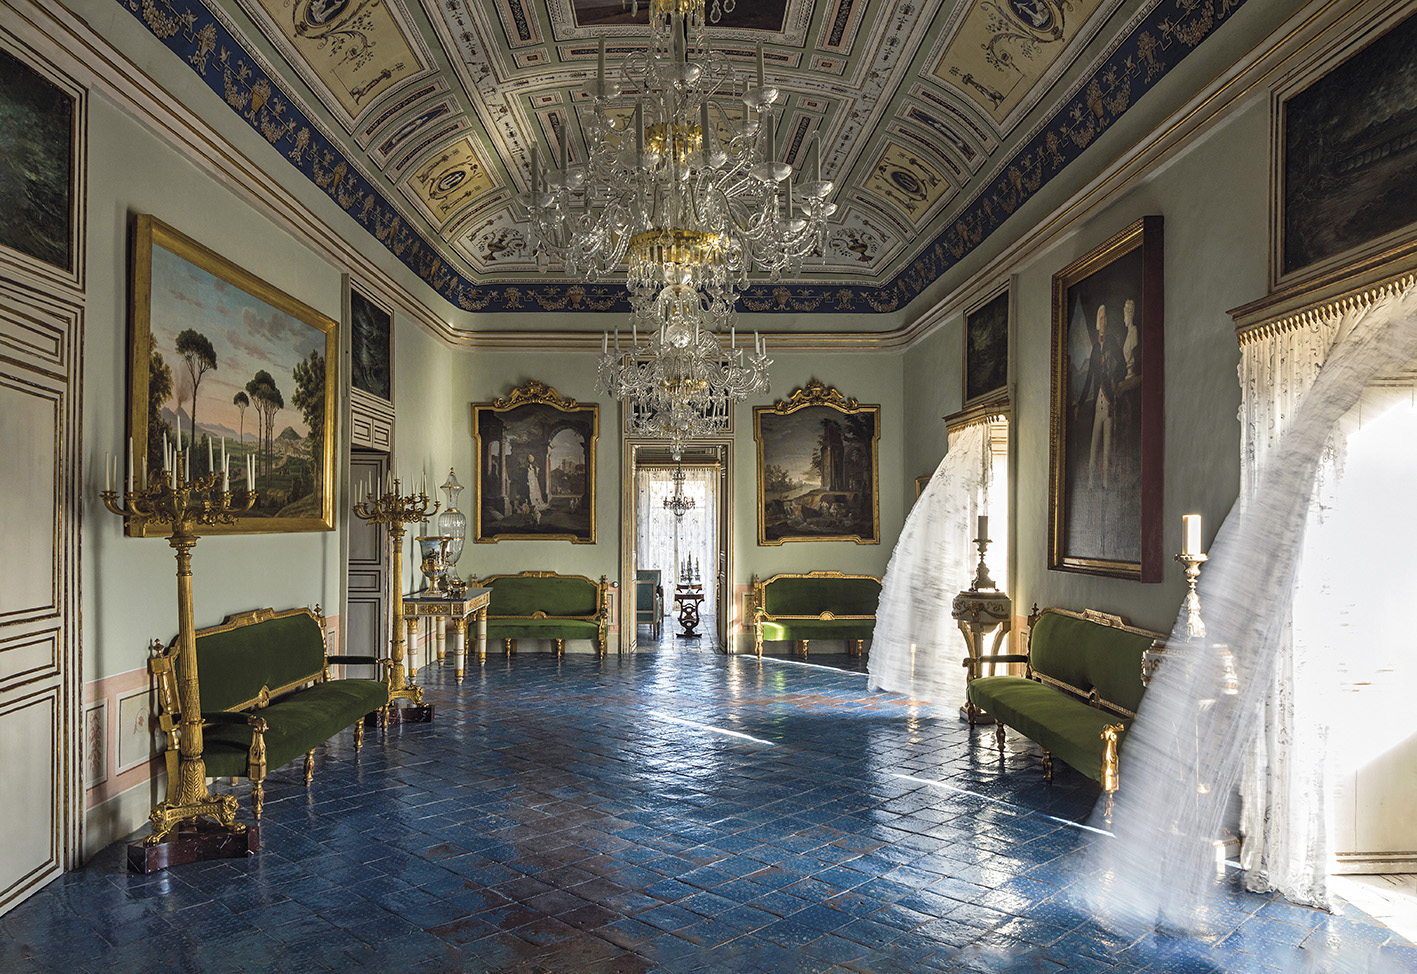 Avec force meubles et tableaux, Jean-Louis Remilleux a recréé l’atmosphère très raffinée d’un palais sicilien de la fin du XVIIIe siècle.©